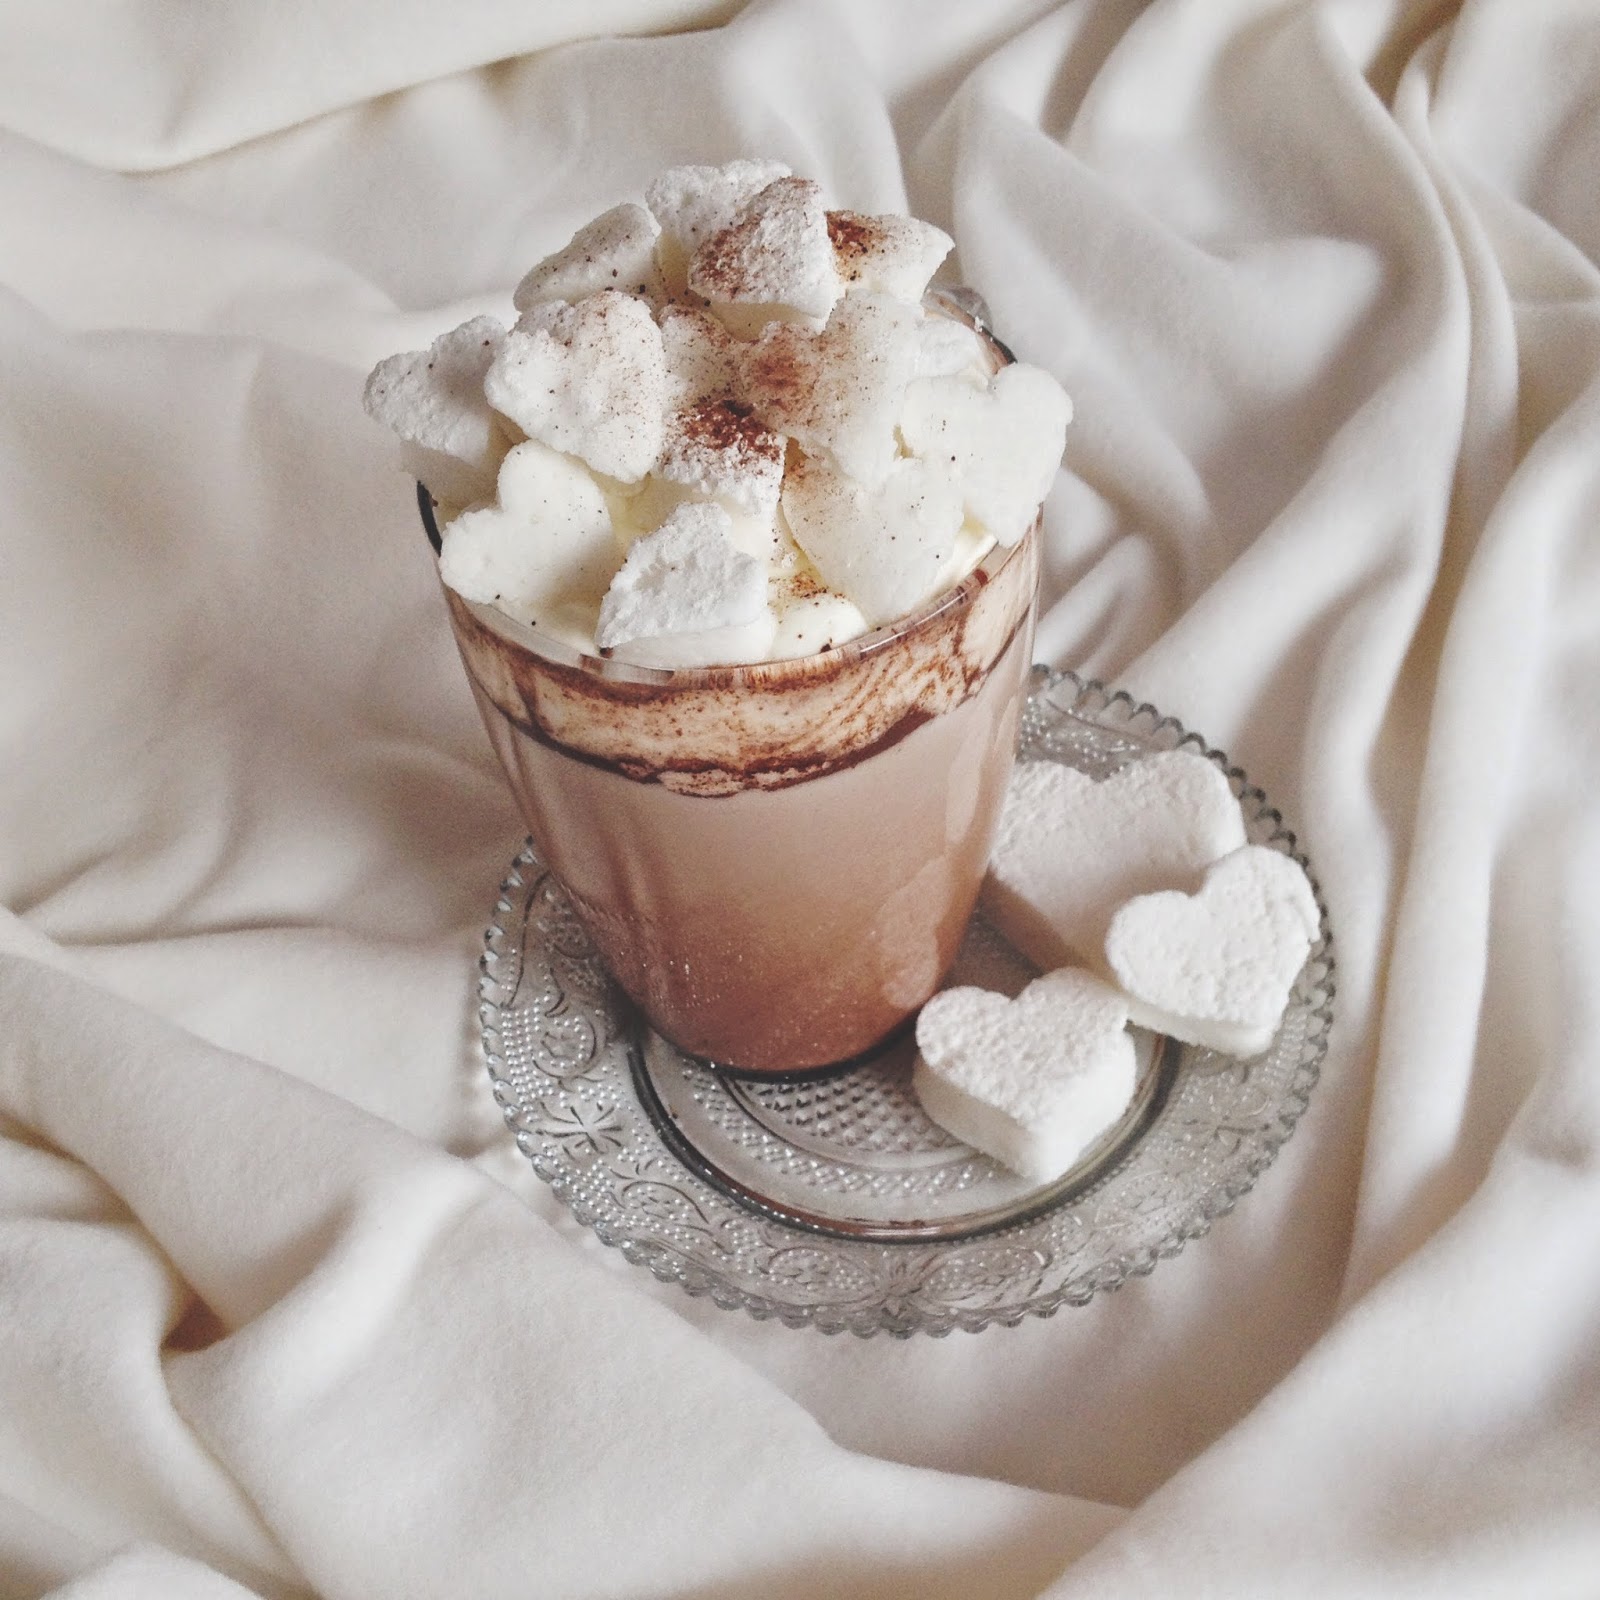 Marshmallows Mit Schokolade — Rezepte Suchen